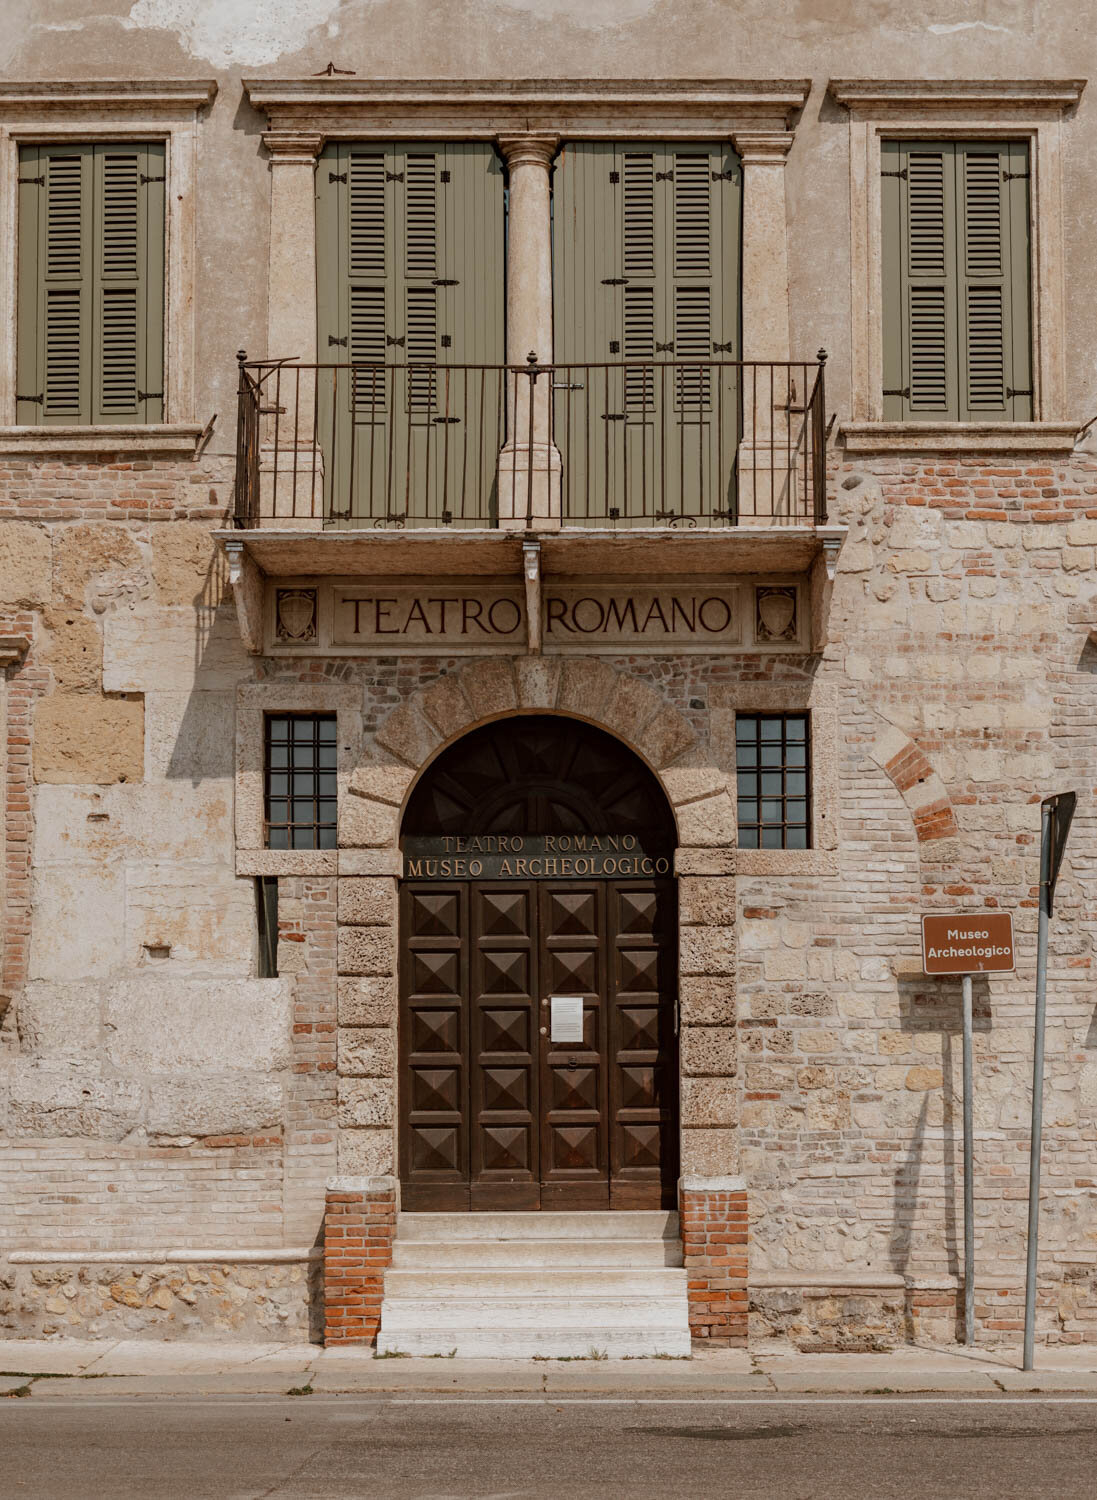 Teatro Romano - Verona - Italy